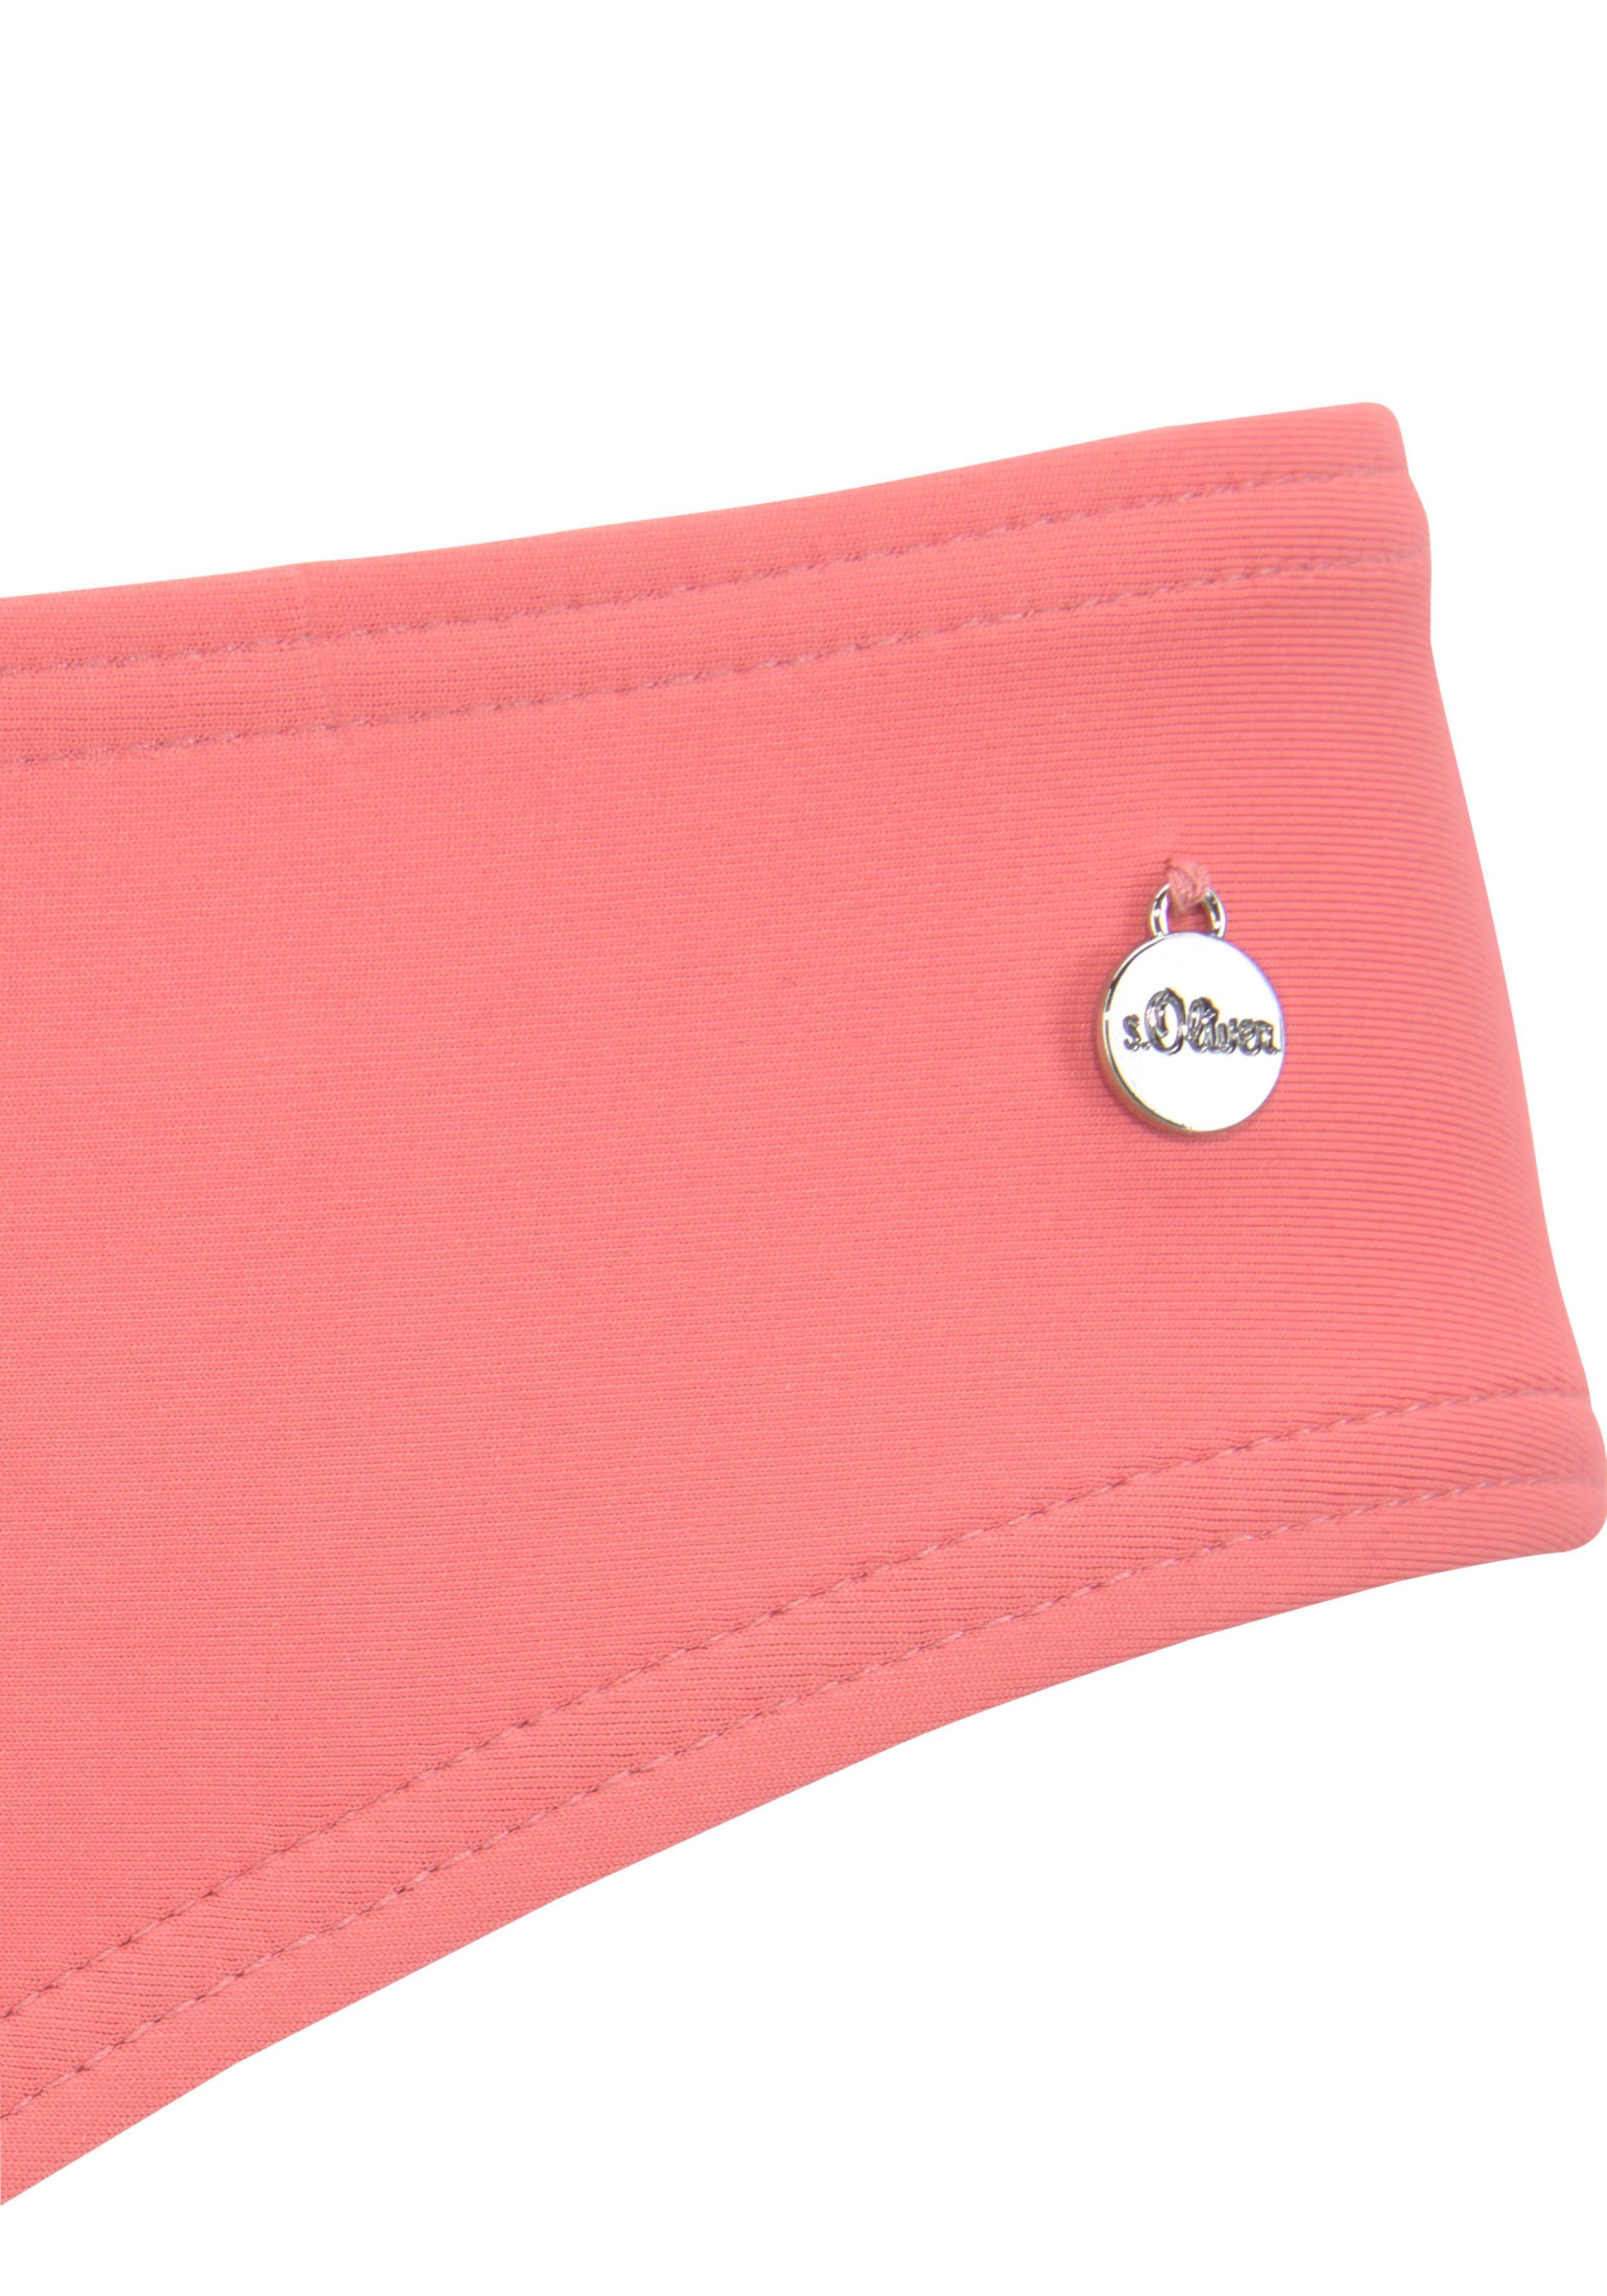 s.oliver red label beachwear bikinibroekje enja in effen kleuren roze